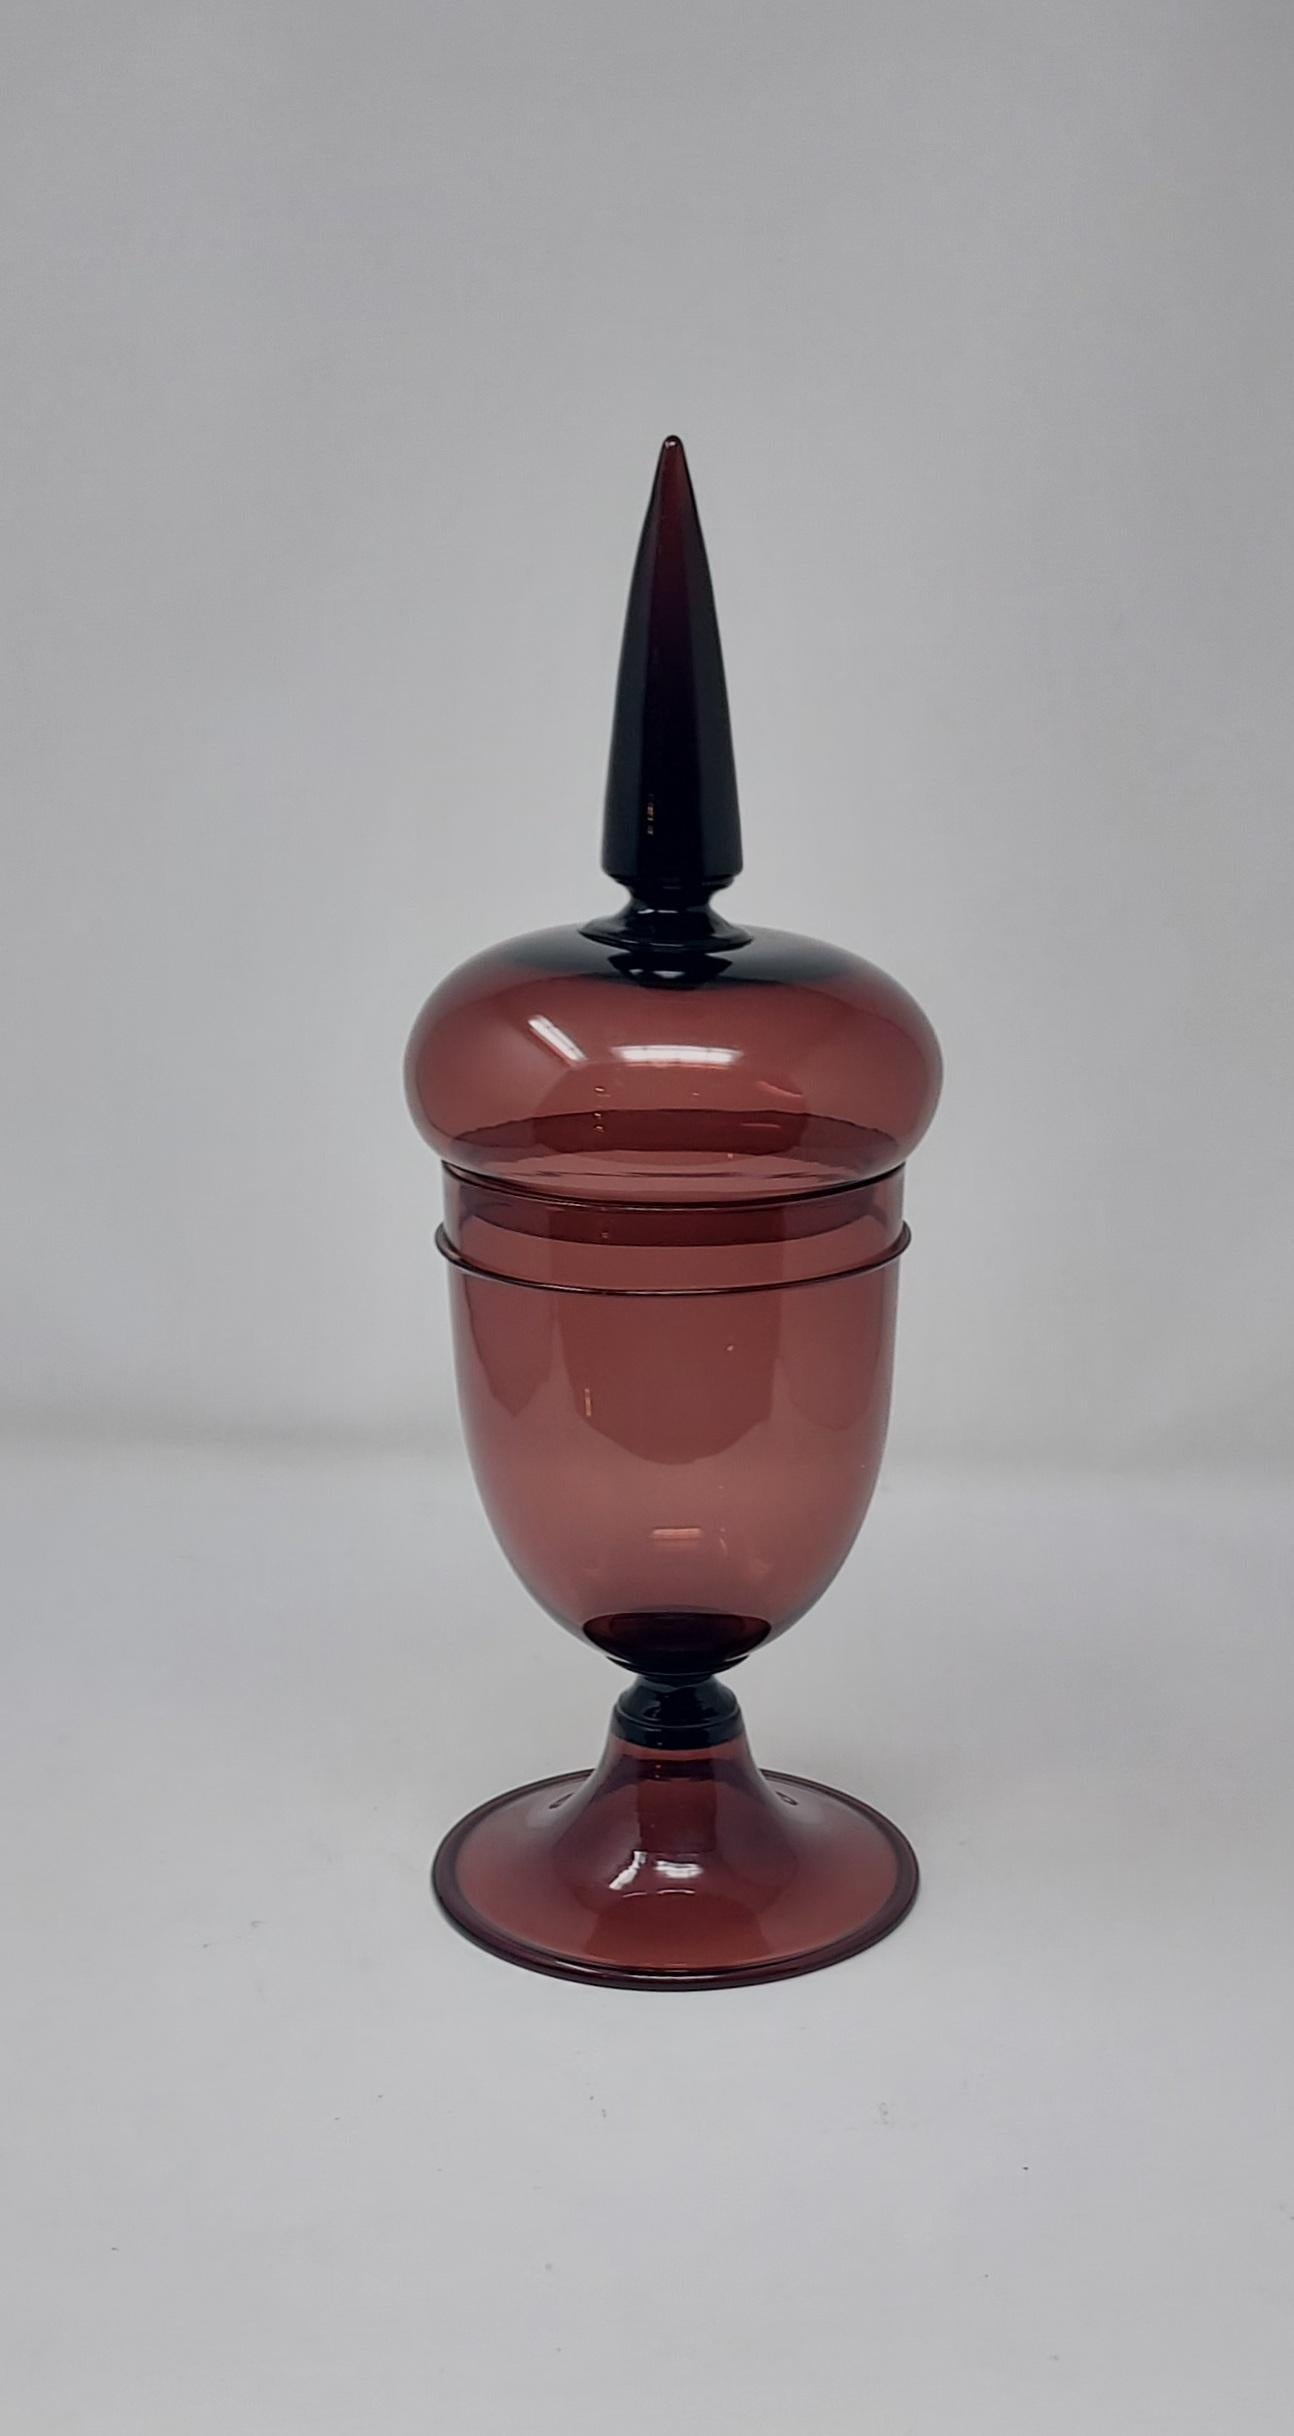 L'œuvre de Paolo Venini, inspirée du XVIIIe siècle, a été conçue pour être utilisée dans le cadre d'une exposition.  pots d'apothicaire, compotes. Modèle 4740 (rouge) : 46 cm de haut avec signature au tampon acide et étiquette papèr originale.